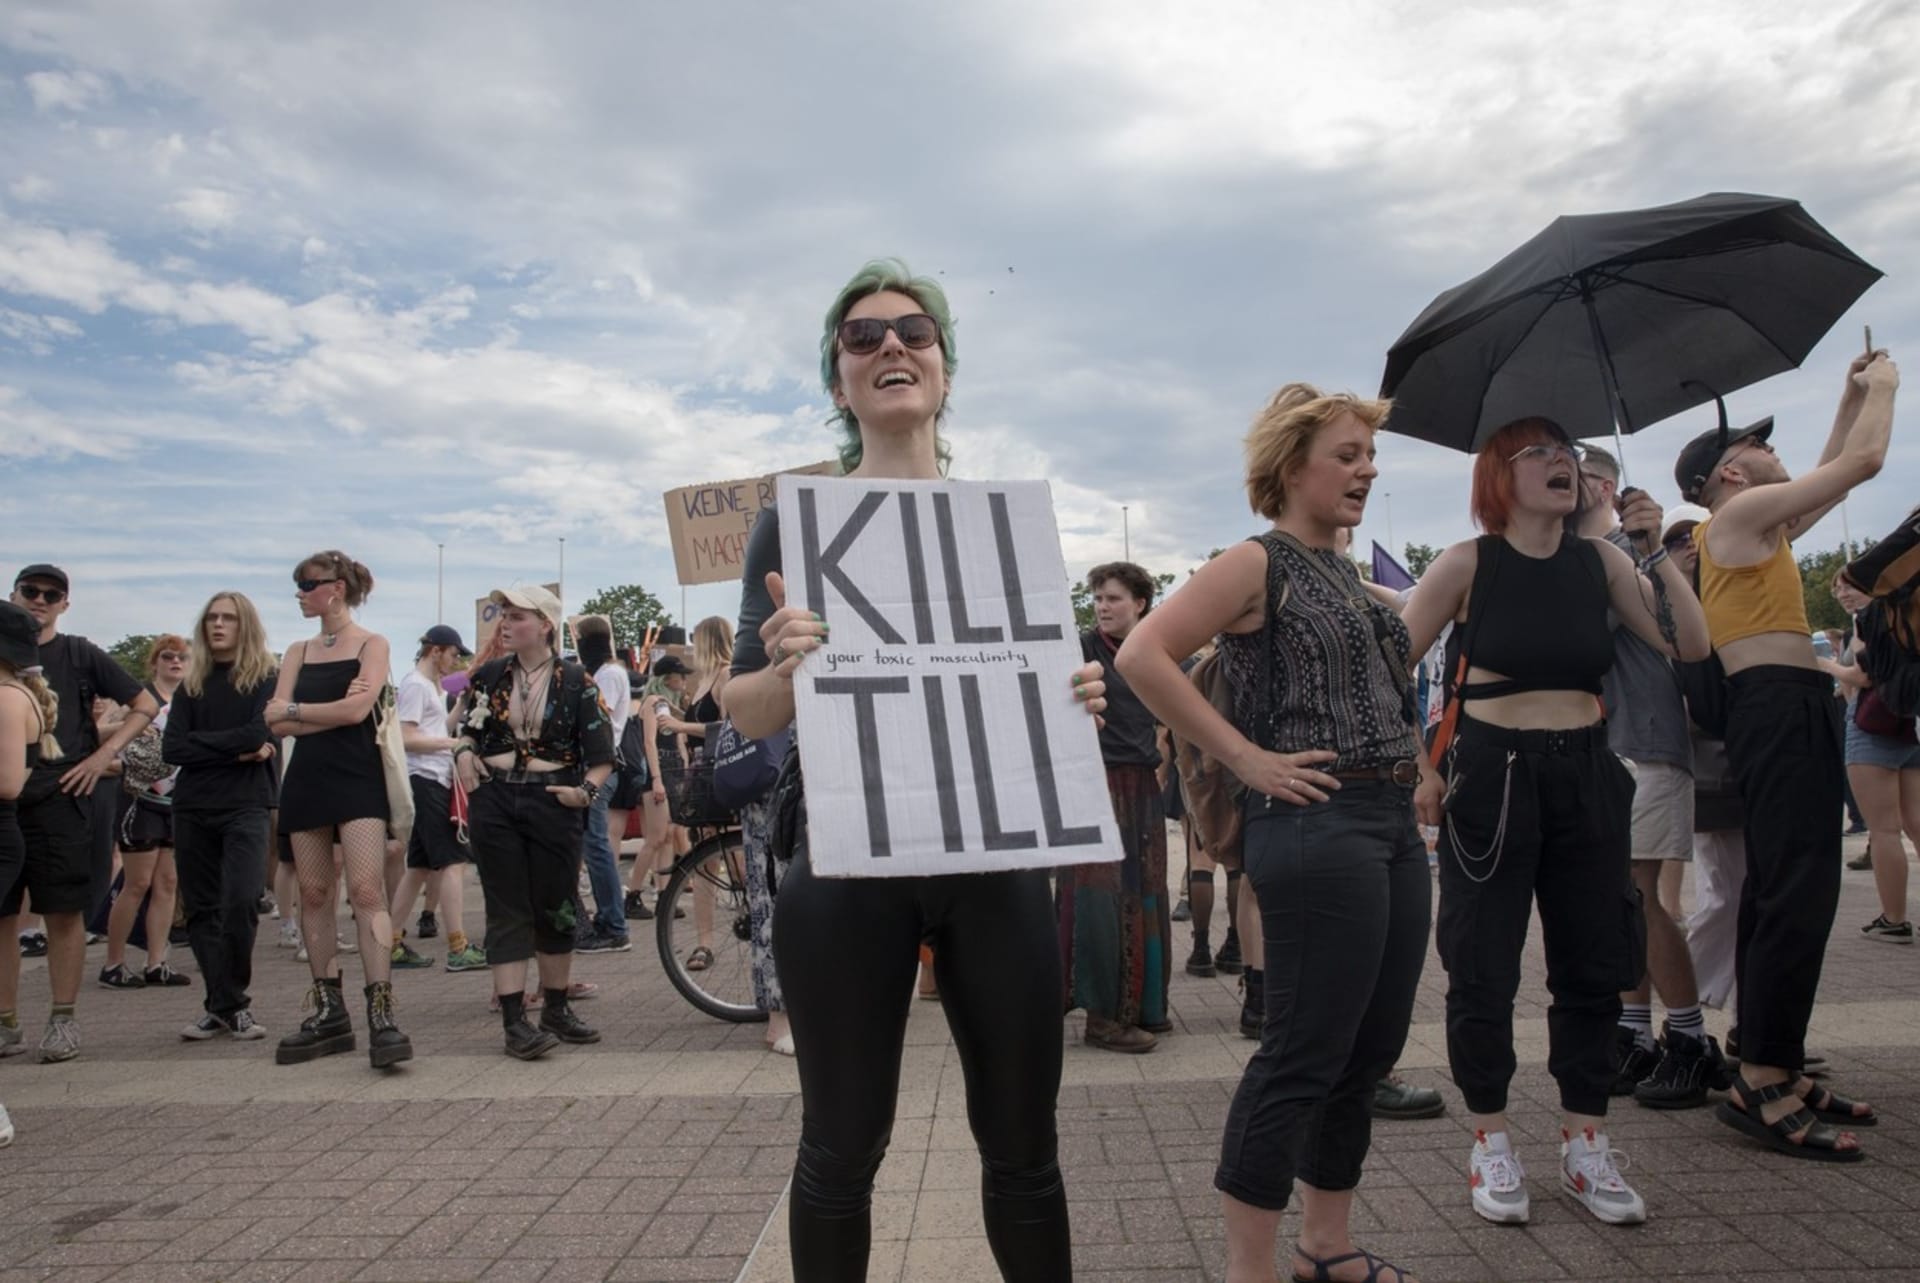 Během protestů před červencovými koncerty skupiny Rammstein se objevily i ostřejší transparenty, mezi nimi například i heslo Kill Till.